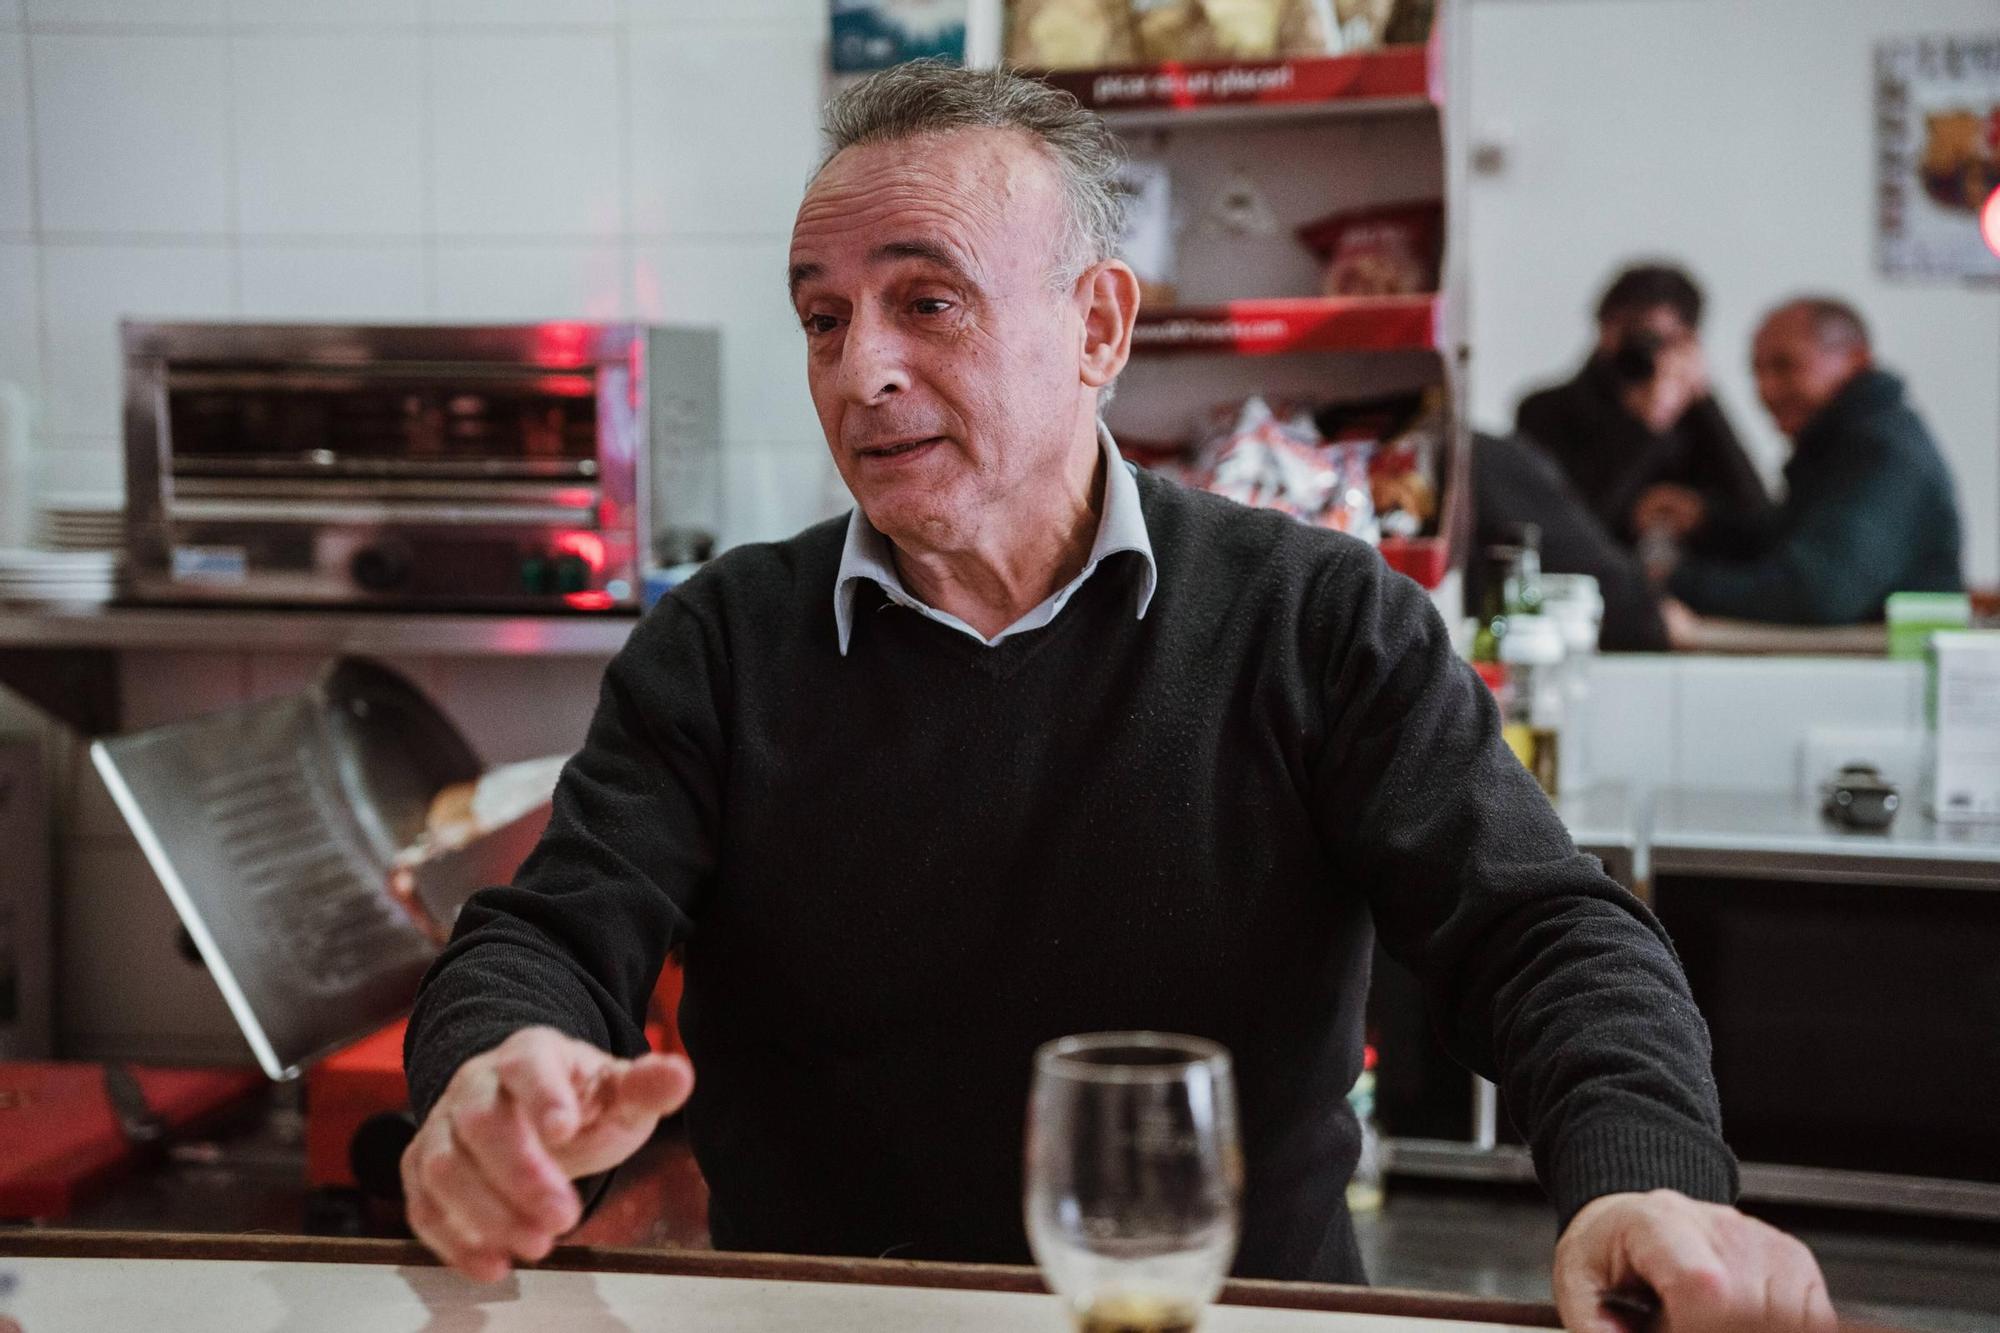 FOTOS | Se traspasa el Bar Junior de Santa Catalina de  Palma, el último refugio de la clientela local